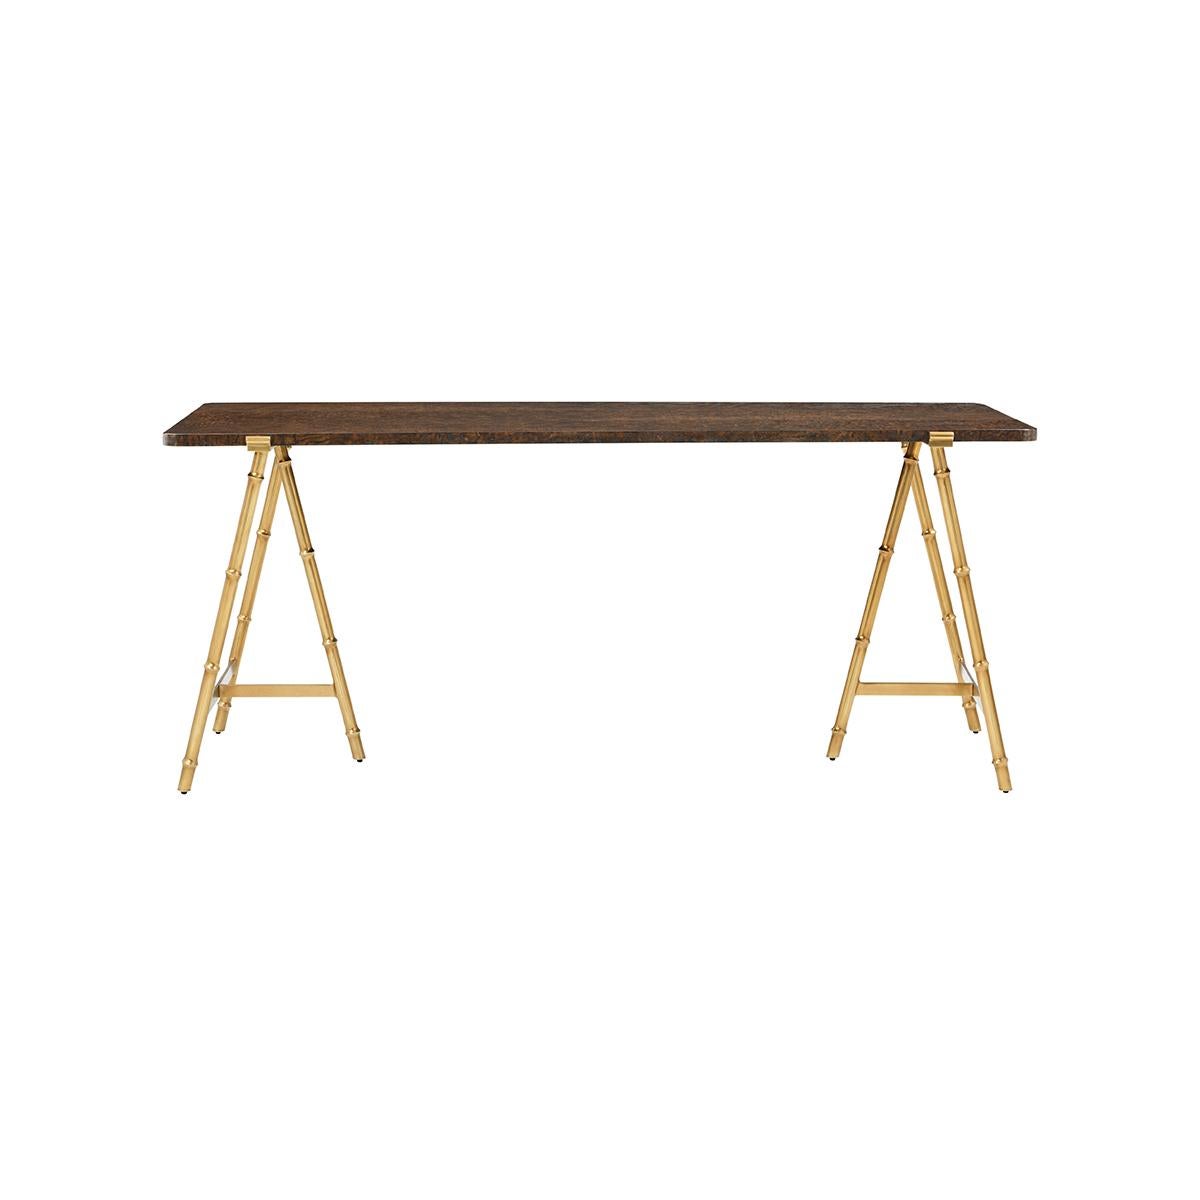 Des lignes élancées forment un design léger et aérien dans cette table moderne. Une combinaison gracieuse de bois de ronce dans une finition polie brun chaud au sommet d'une base organique en faux bois dans une finition bronze satiné.

Dimensions :